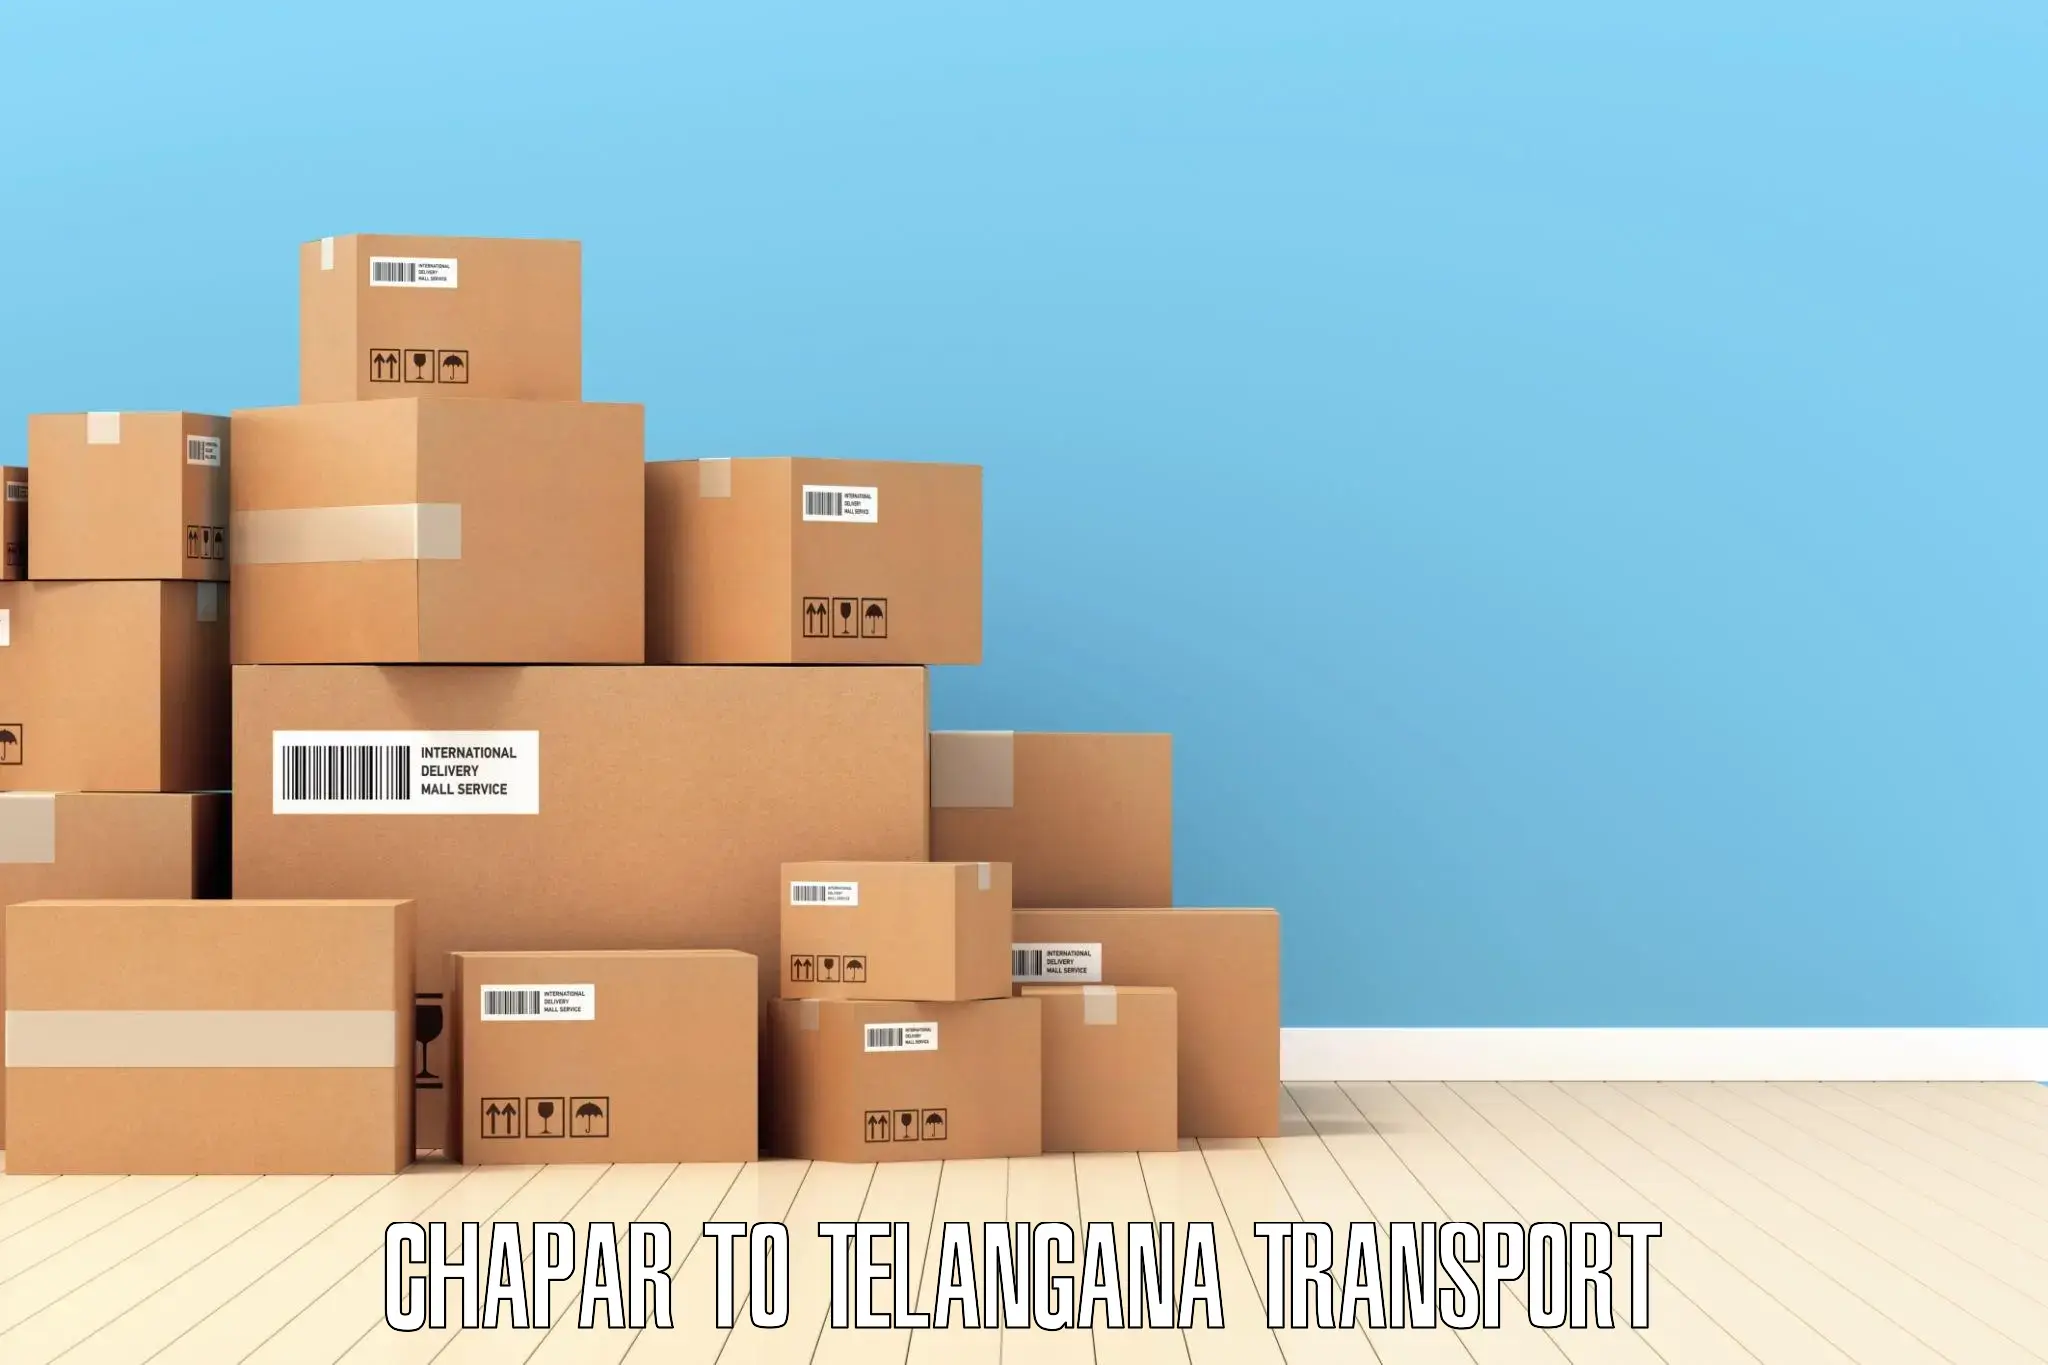 Daily parcel service transport Chapar to Ramannapeta